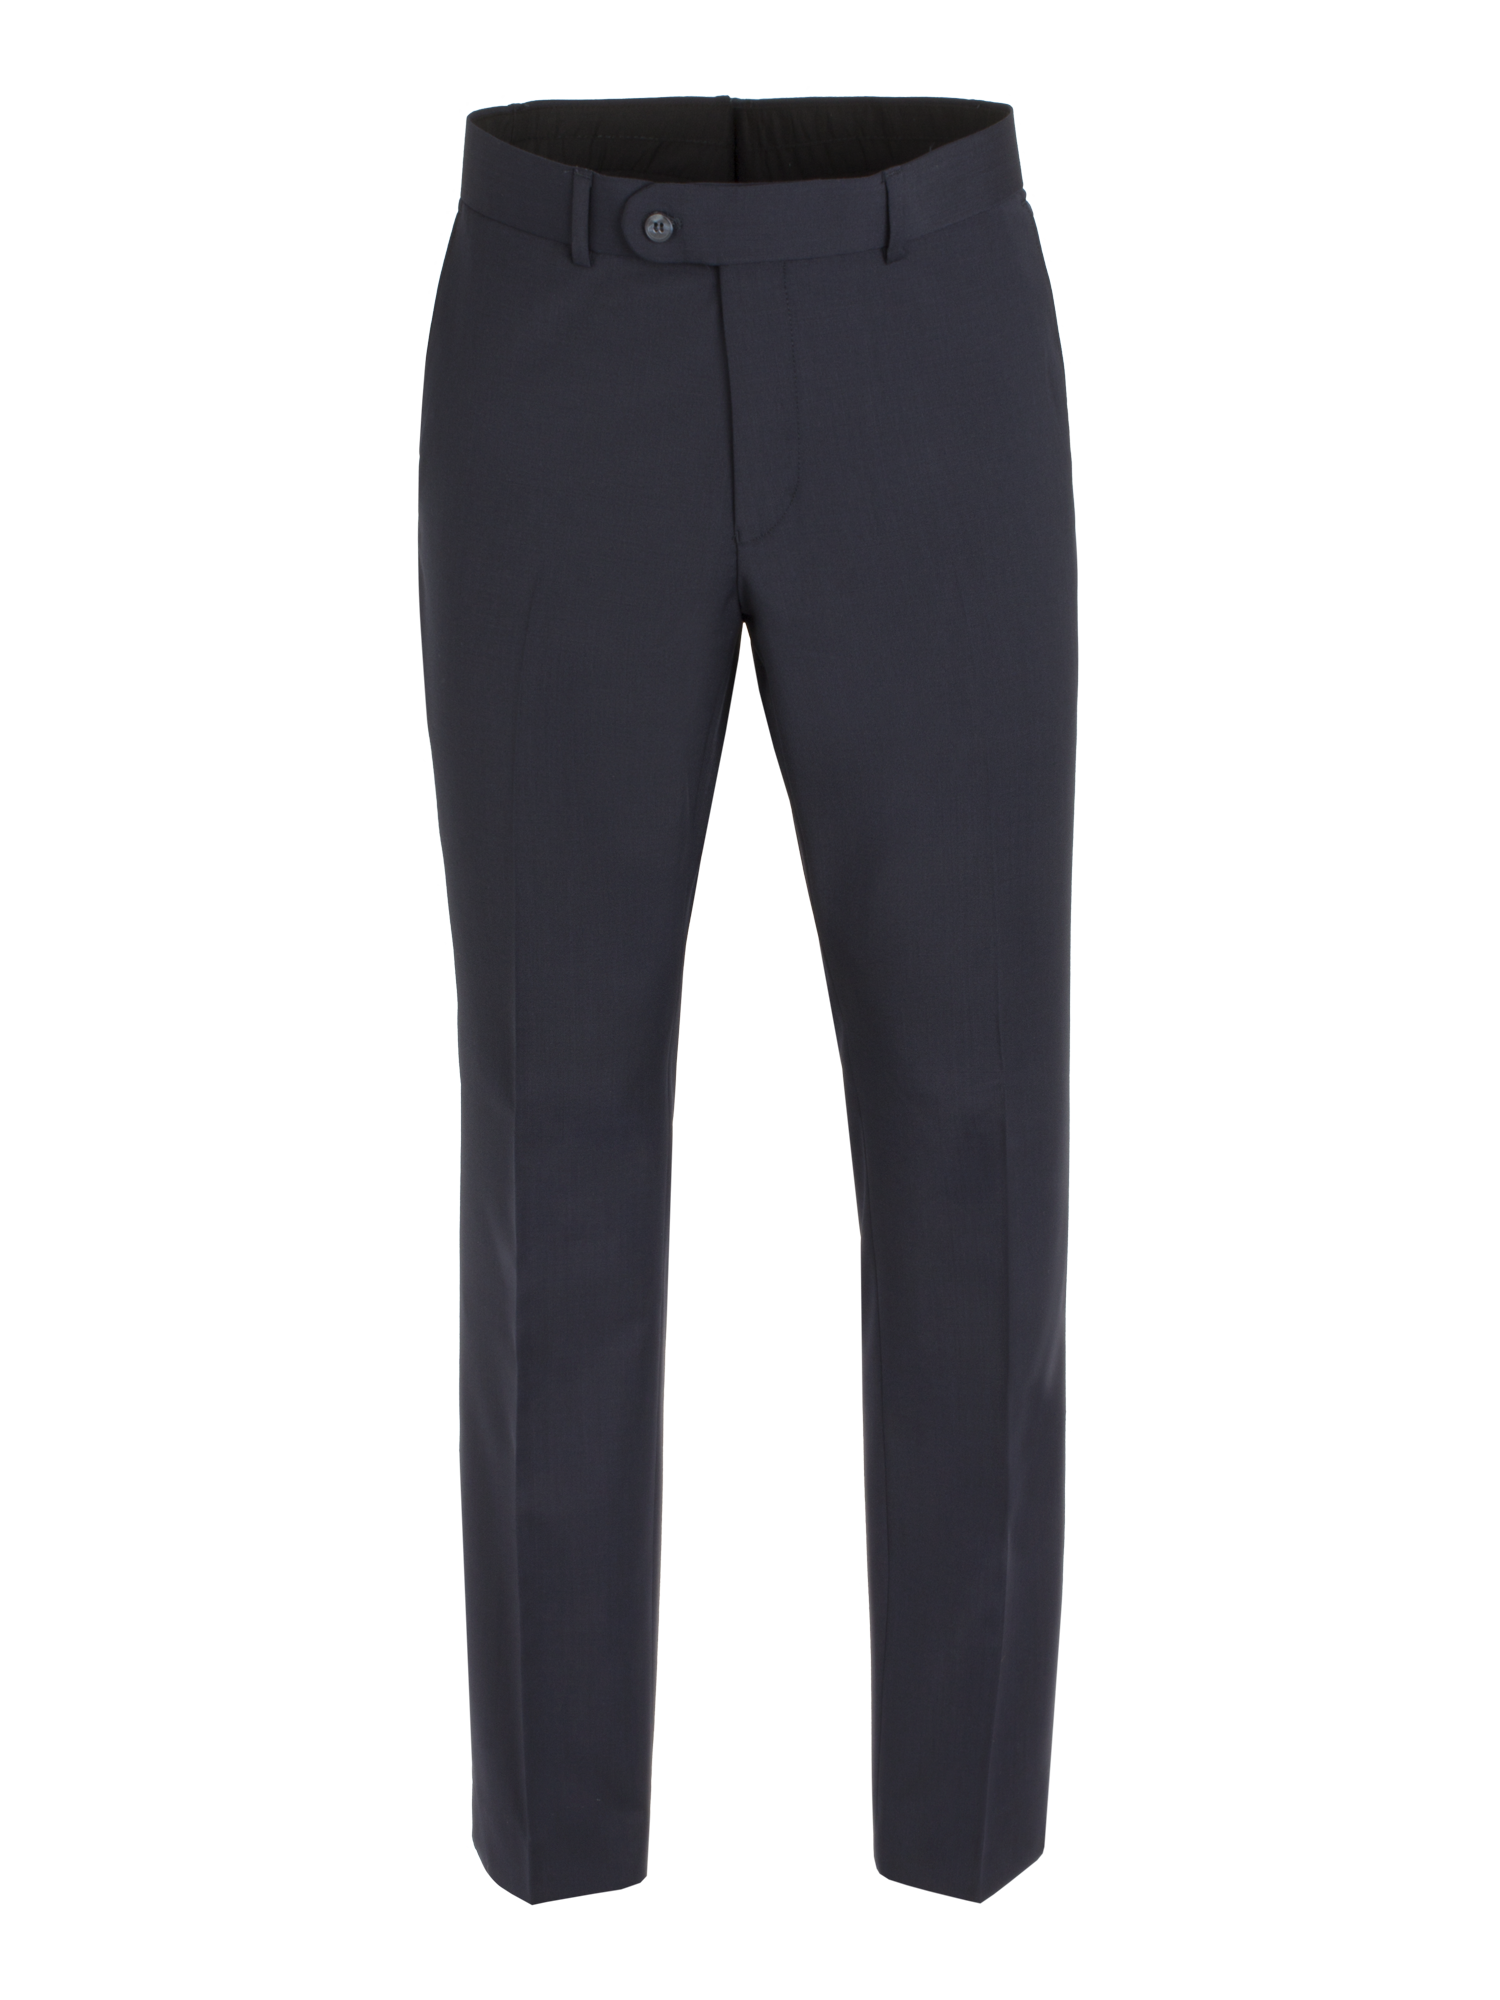 Scott Performance Suit Trousers - Navy - Birtchnells